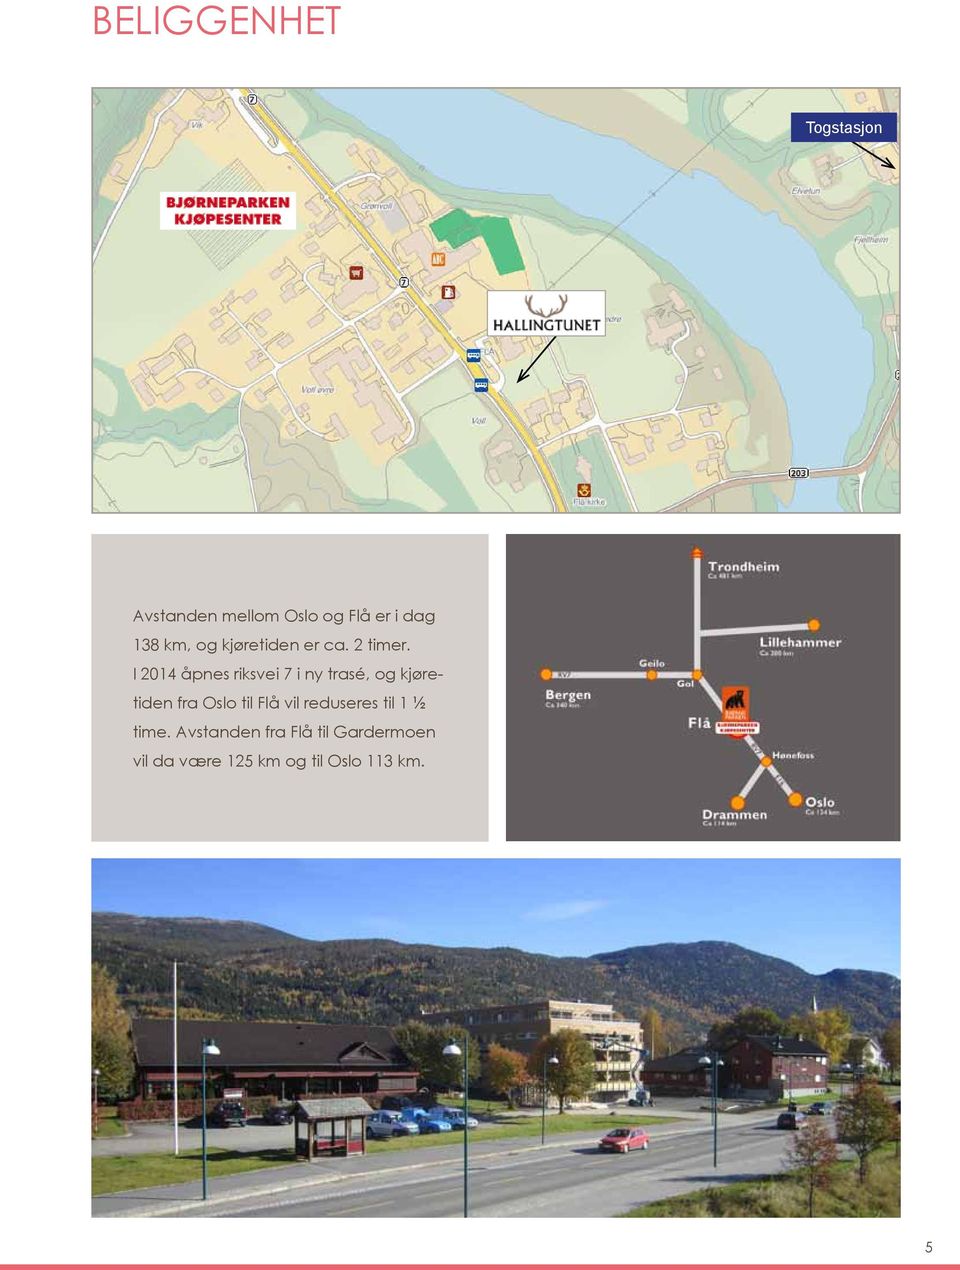 I 2014 åpnes riksvei 7 i ny trasé, og kjøretiden fra Oslo til Flå